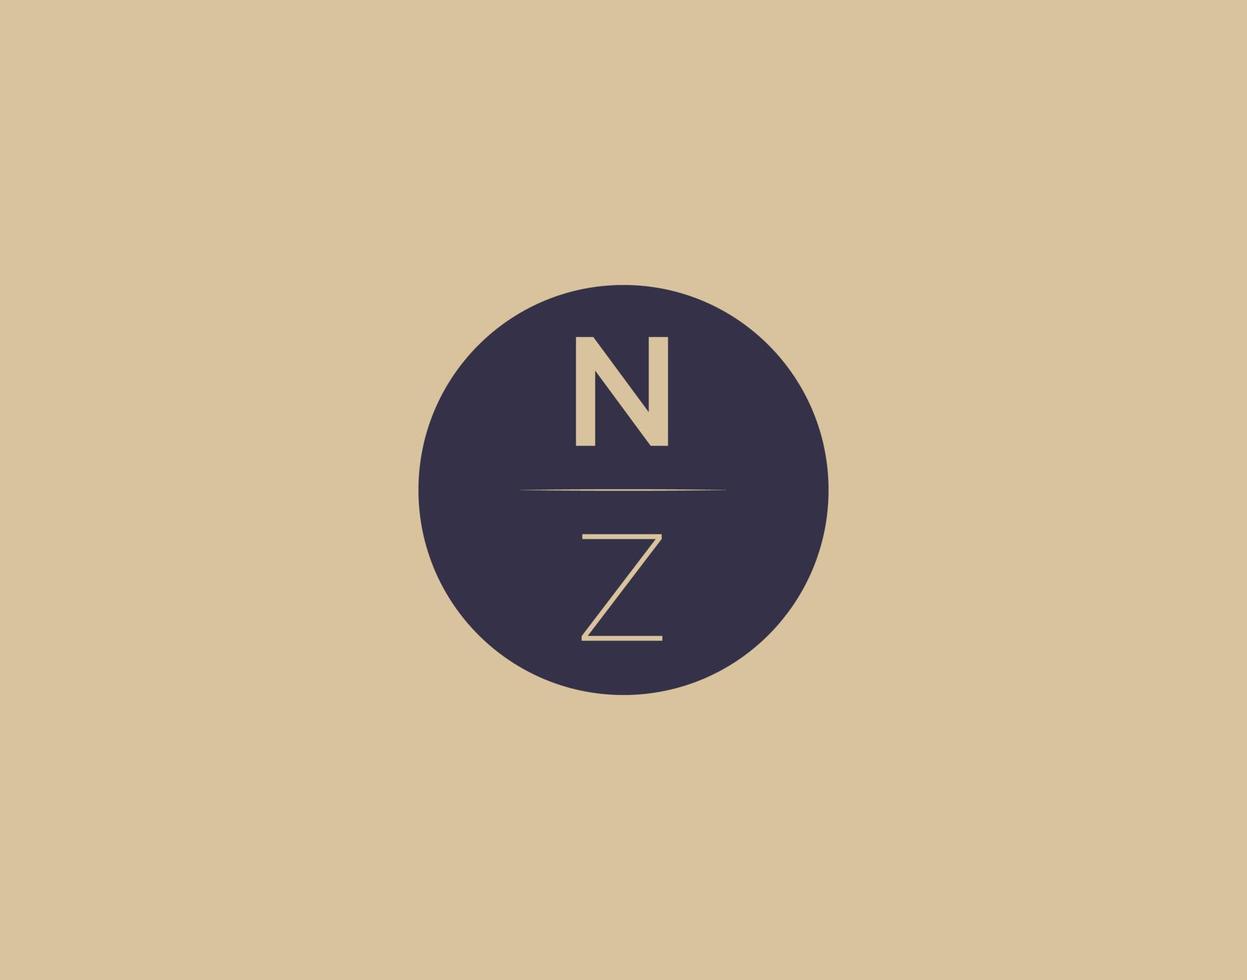 imagens vetoriais de design de logotipo moderno e elegante de carta nz vetor